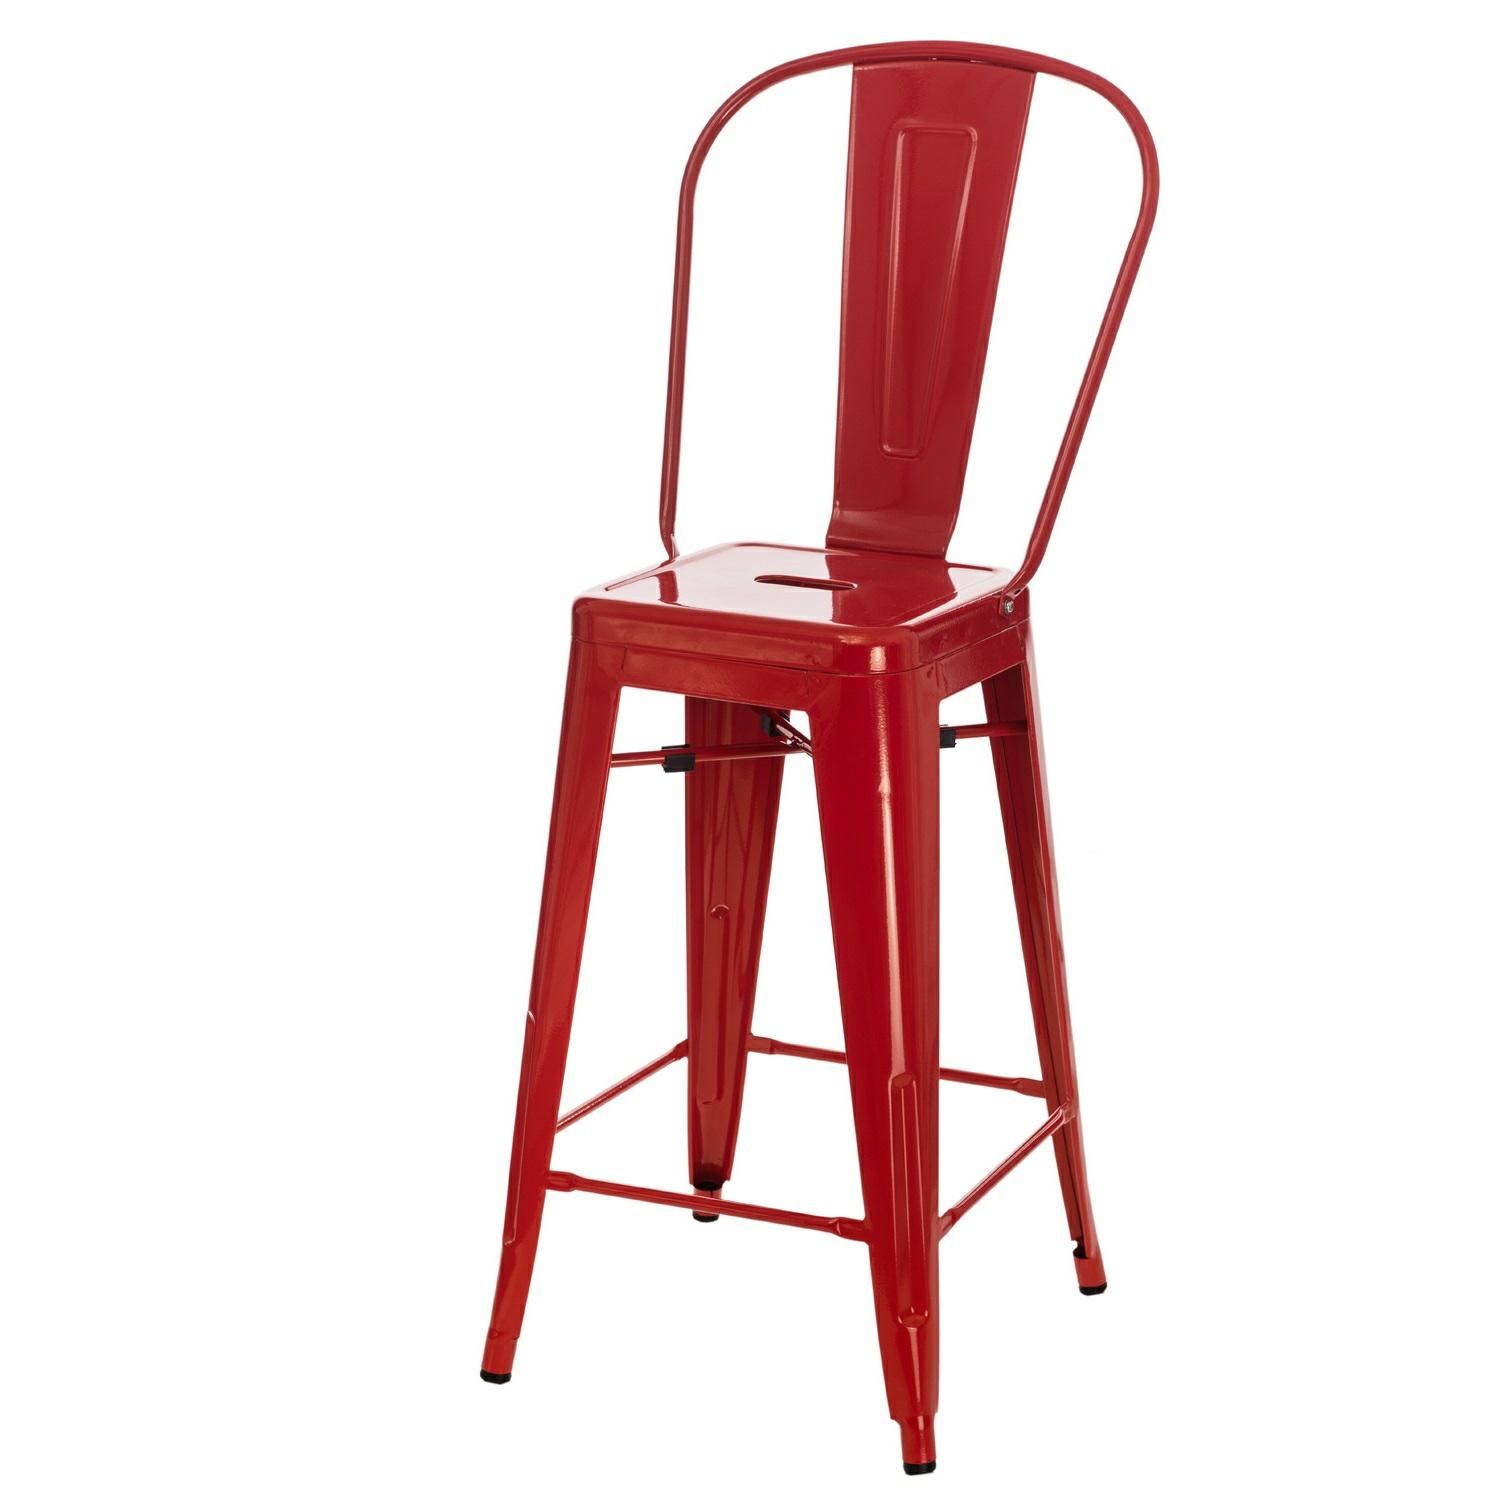  Barová židle PARIS BACK červená inspirovaná Tolix - Mobler.cz